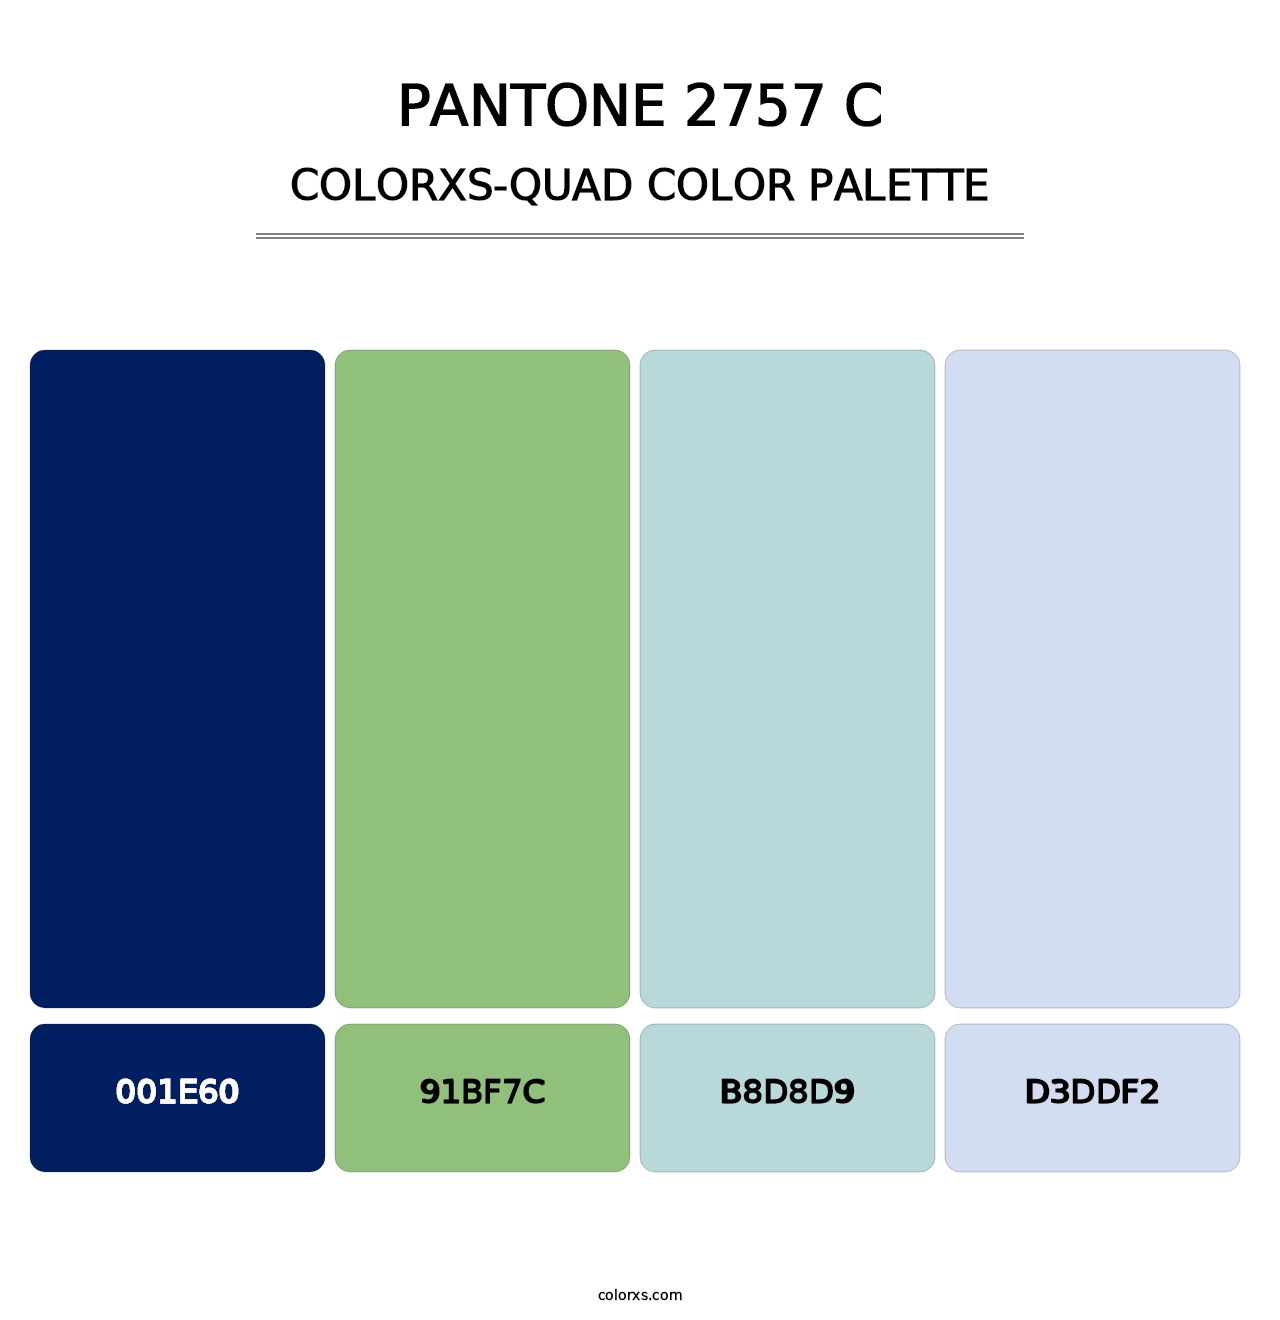 PANTONE 2757 C - Colorxs Quad Palette